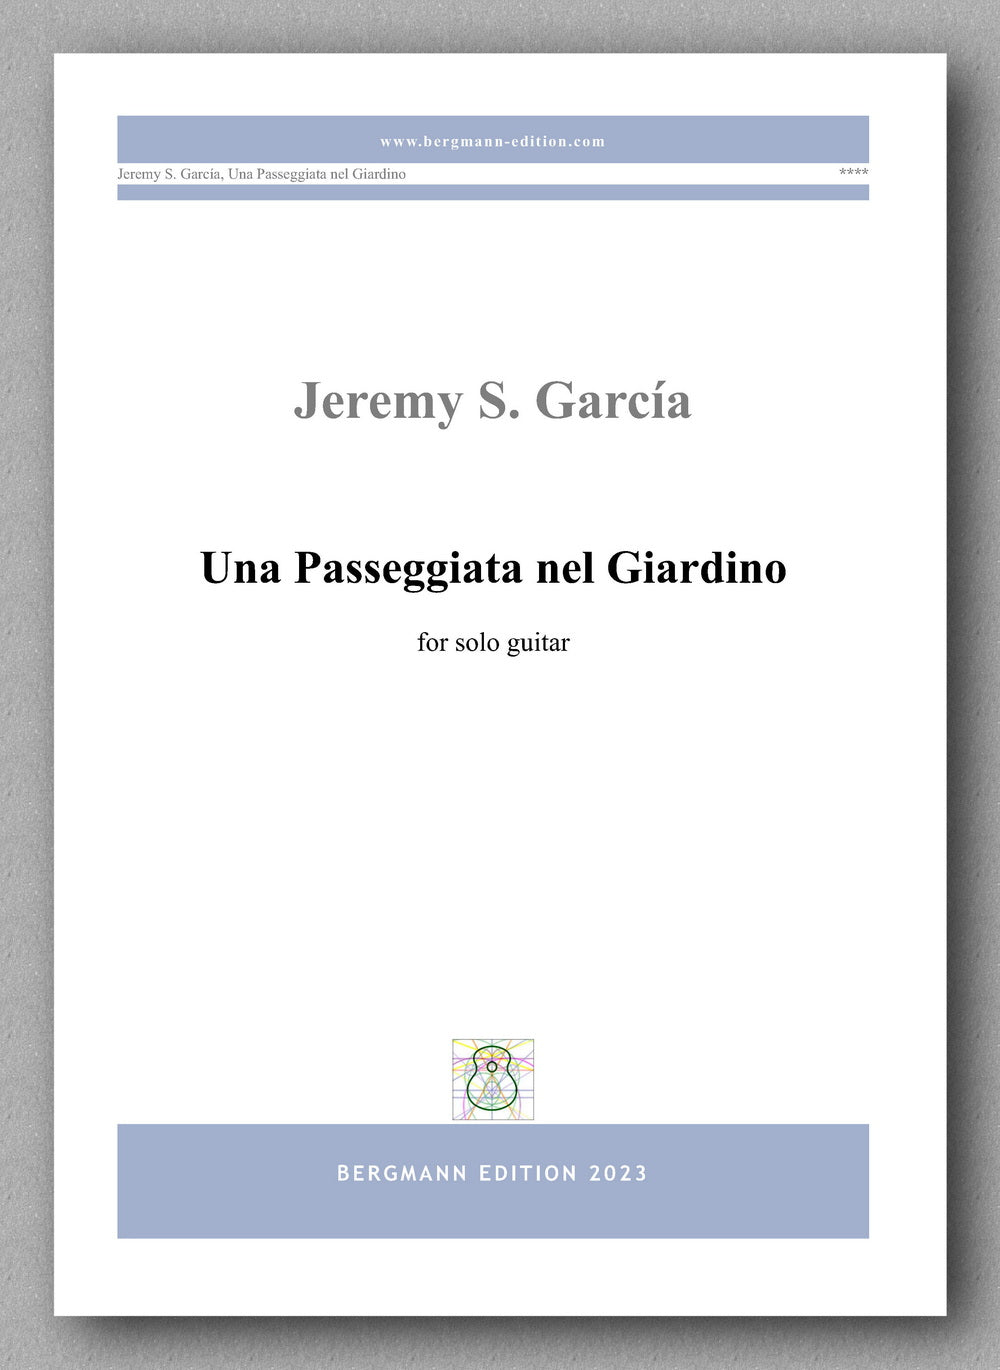 Jeremy S. García, Una Passeggiata nel Giardino - preview of the cover